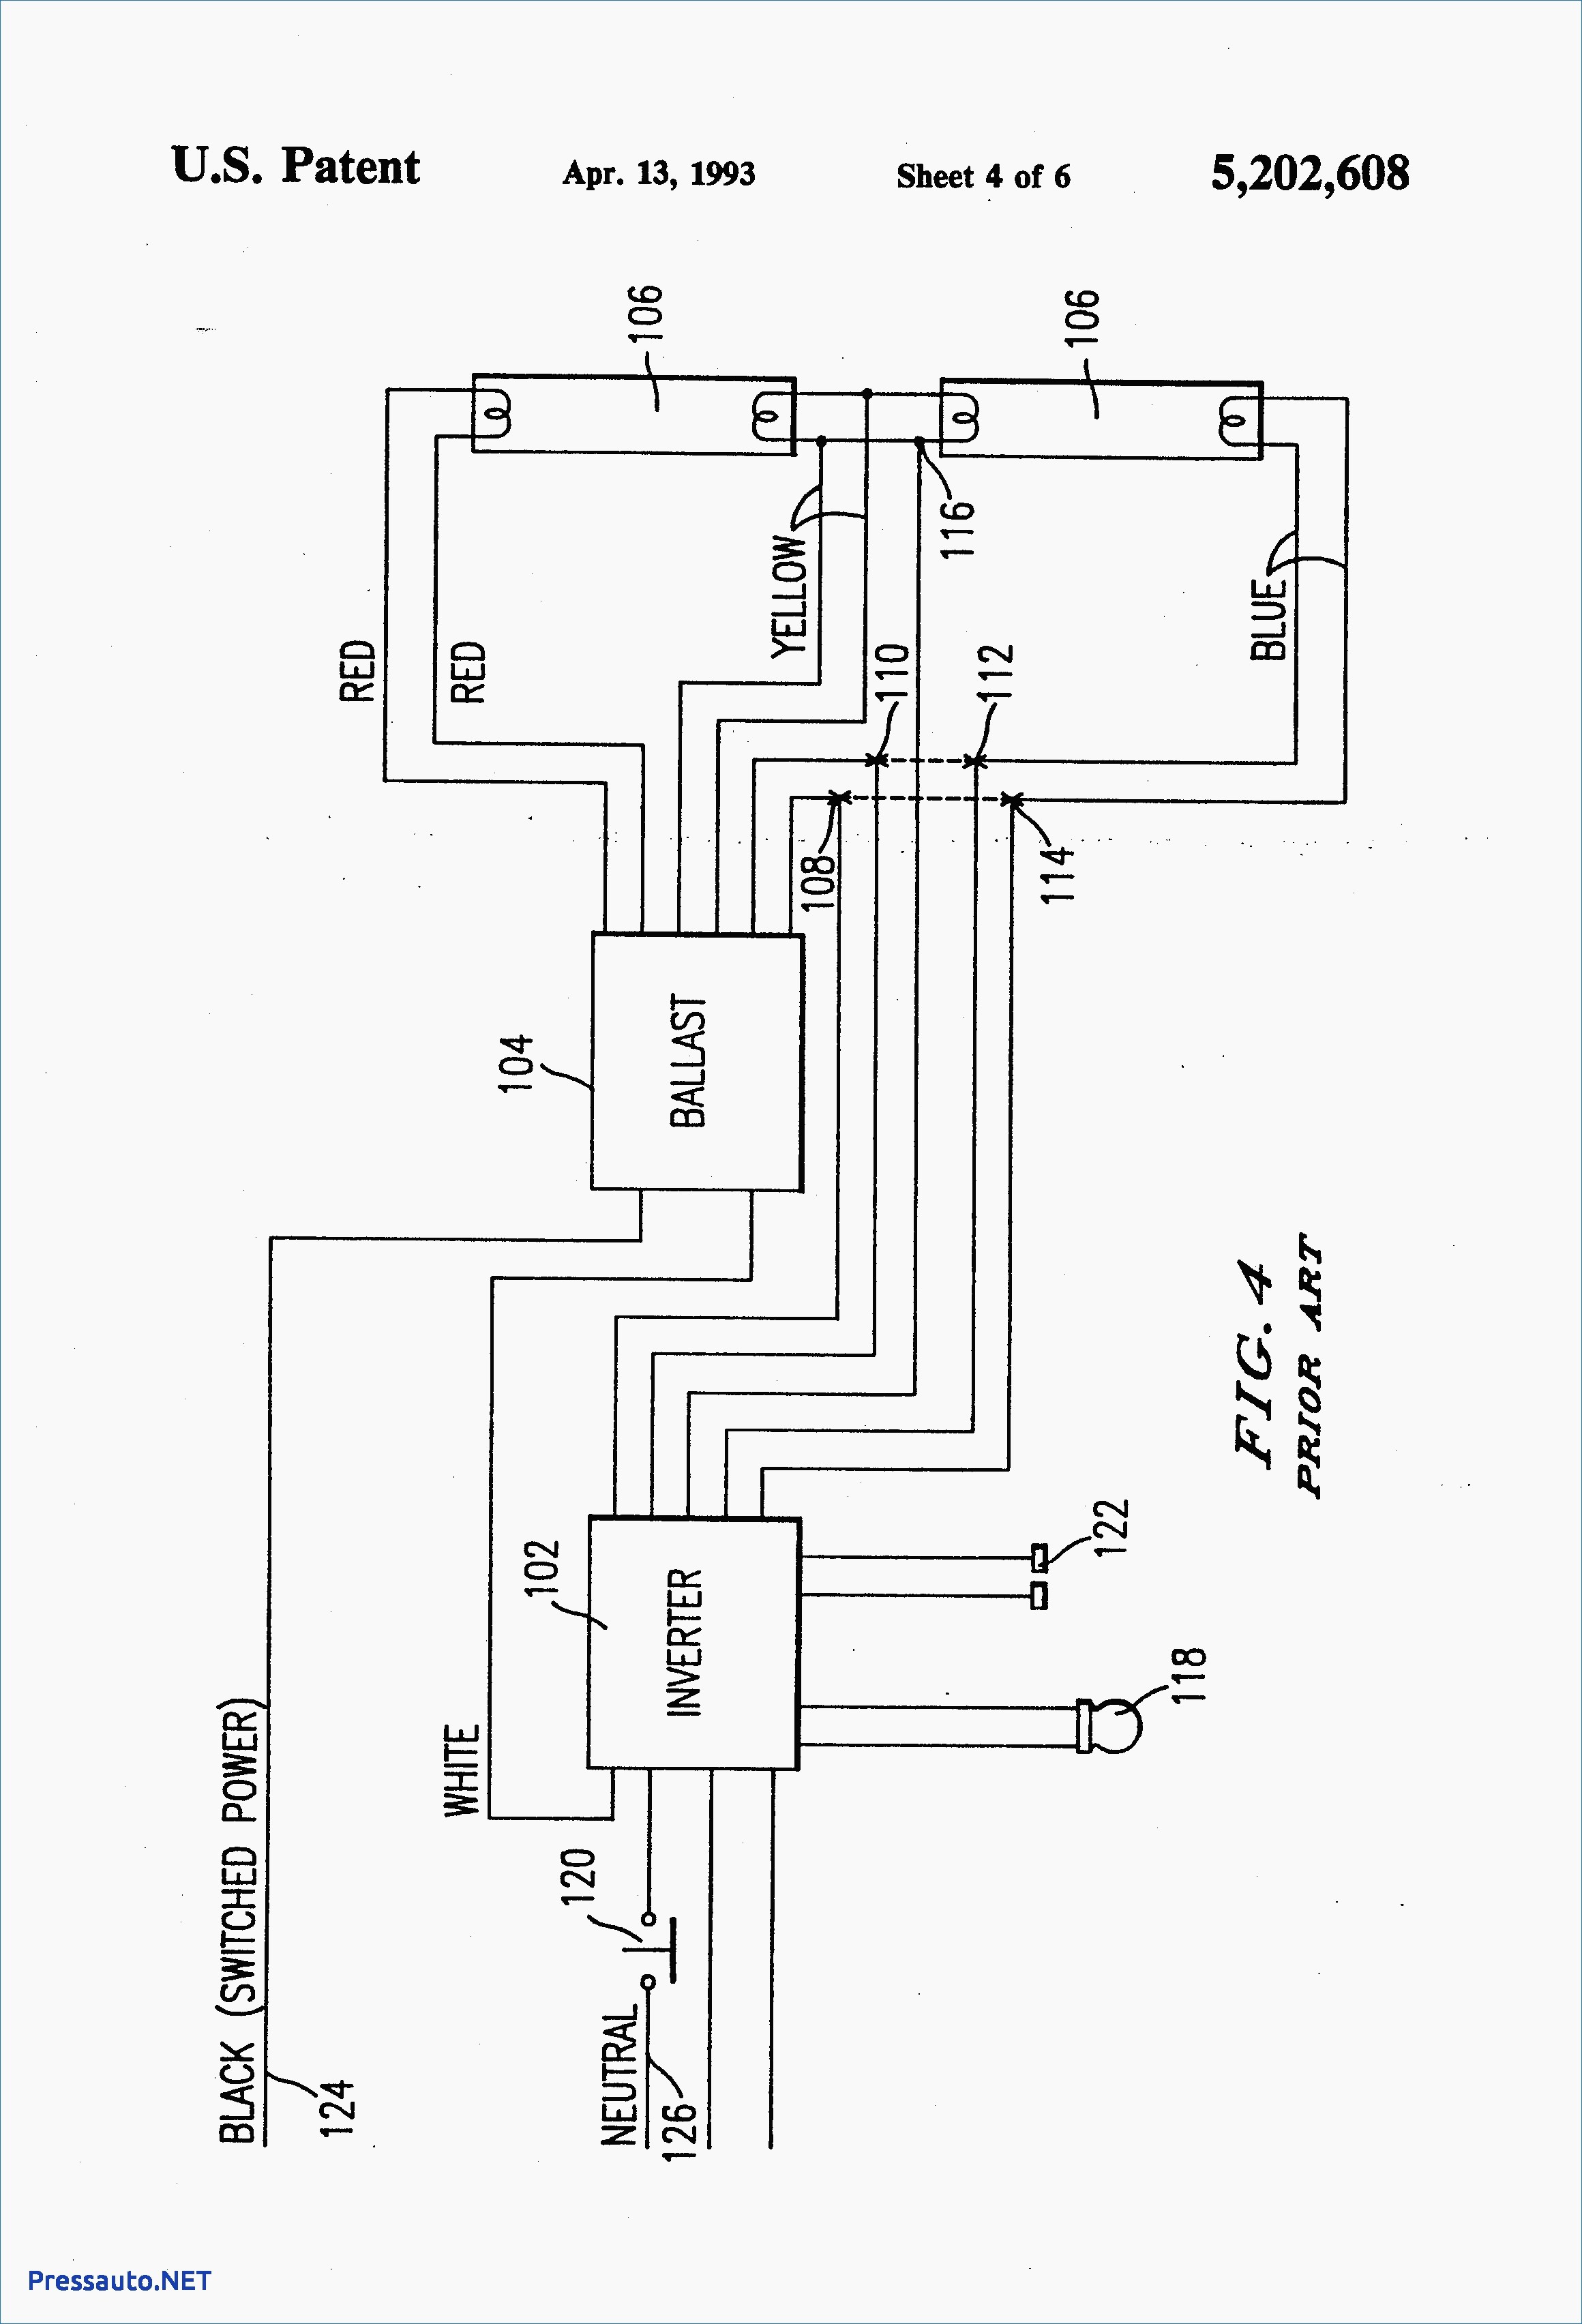 240 Volt cell Wiring Diagram Valid Lighting Contactor Wiring Diagram with Cell Ge and Wiring